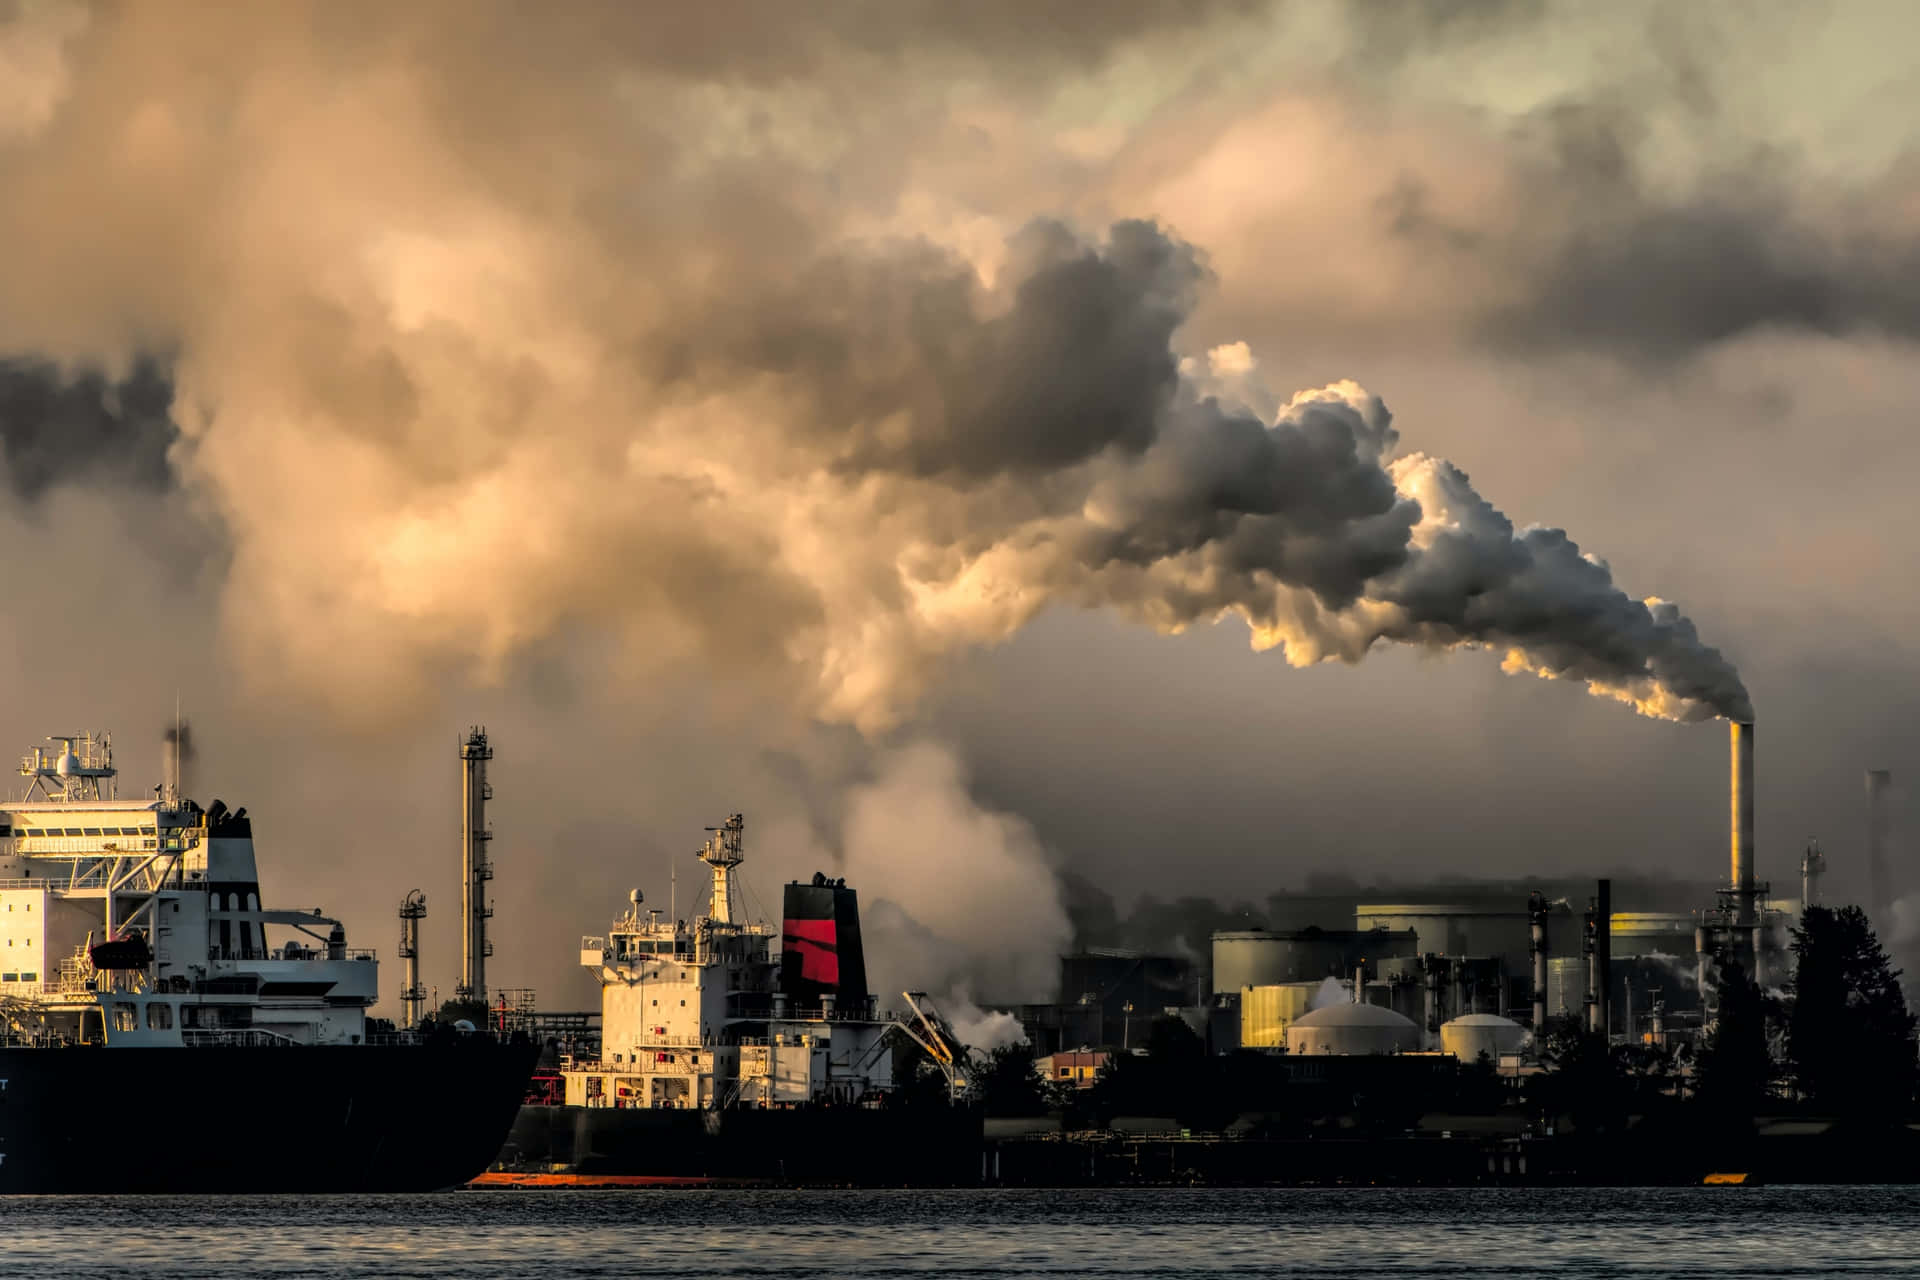 Contaminandoel Aire: El Impacto De La Actividad Humana En El Medio Ambiente